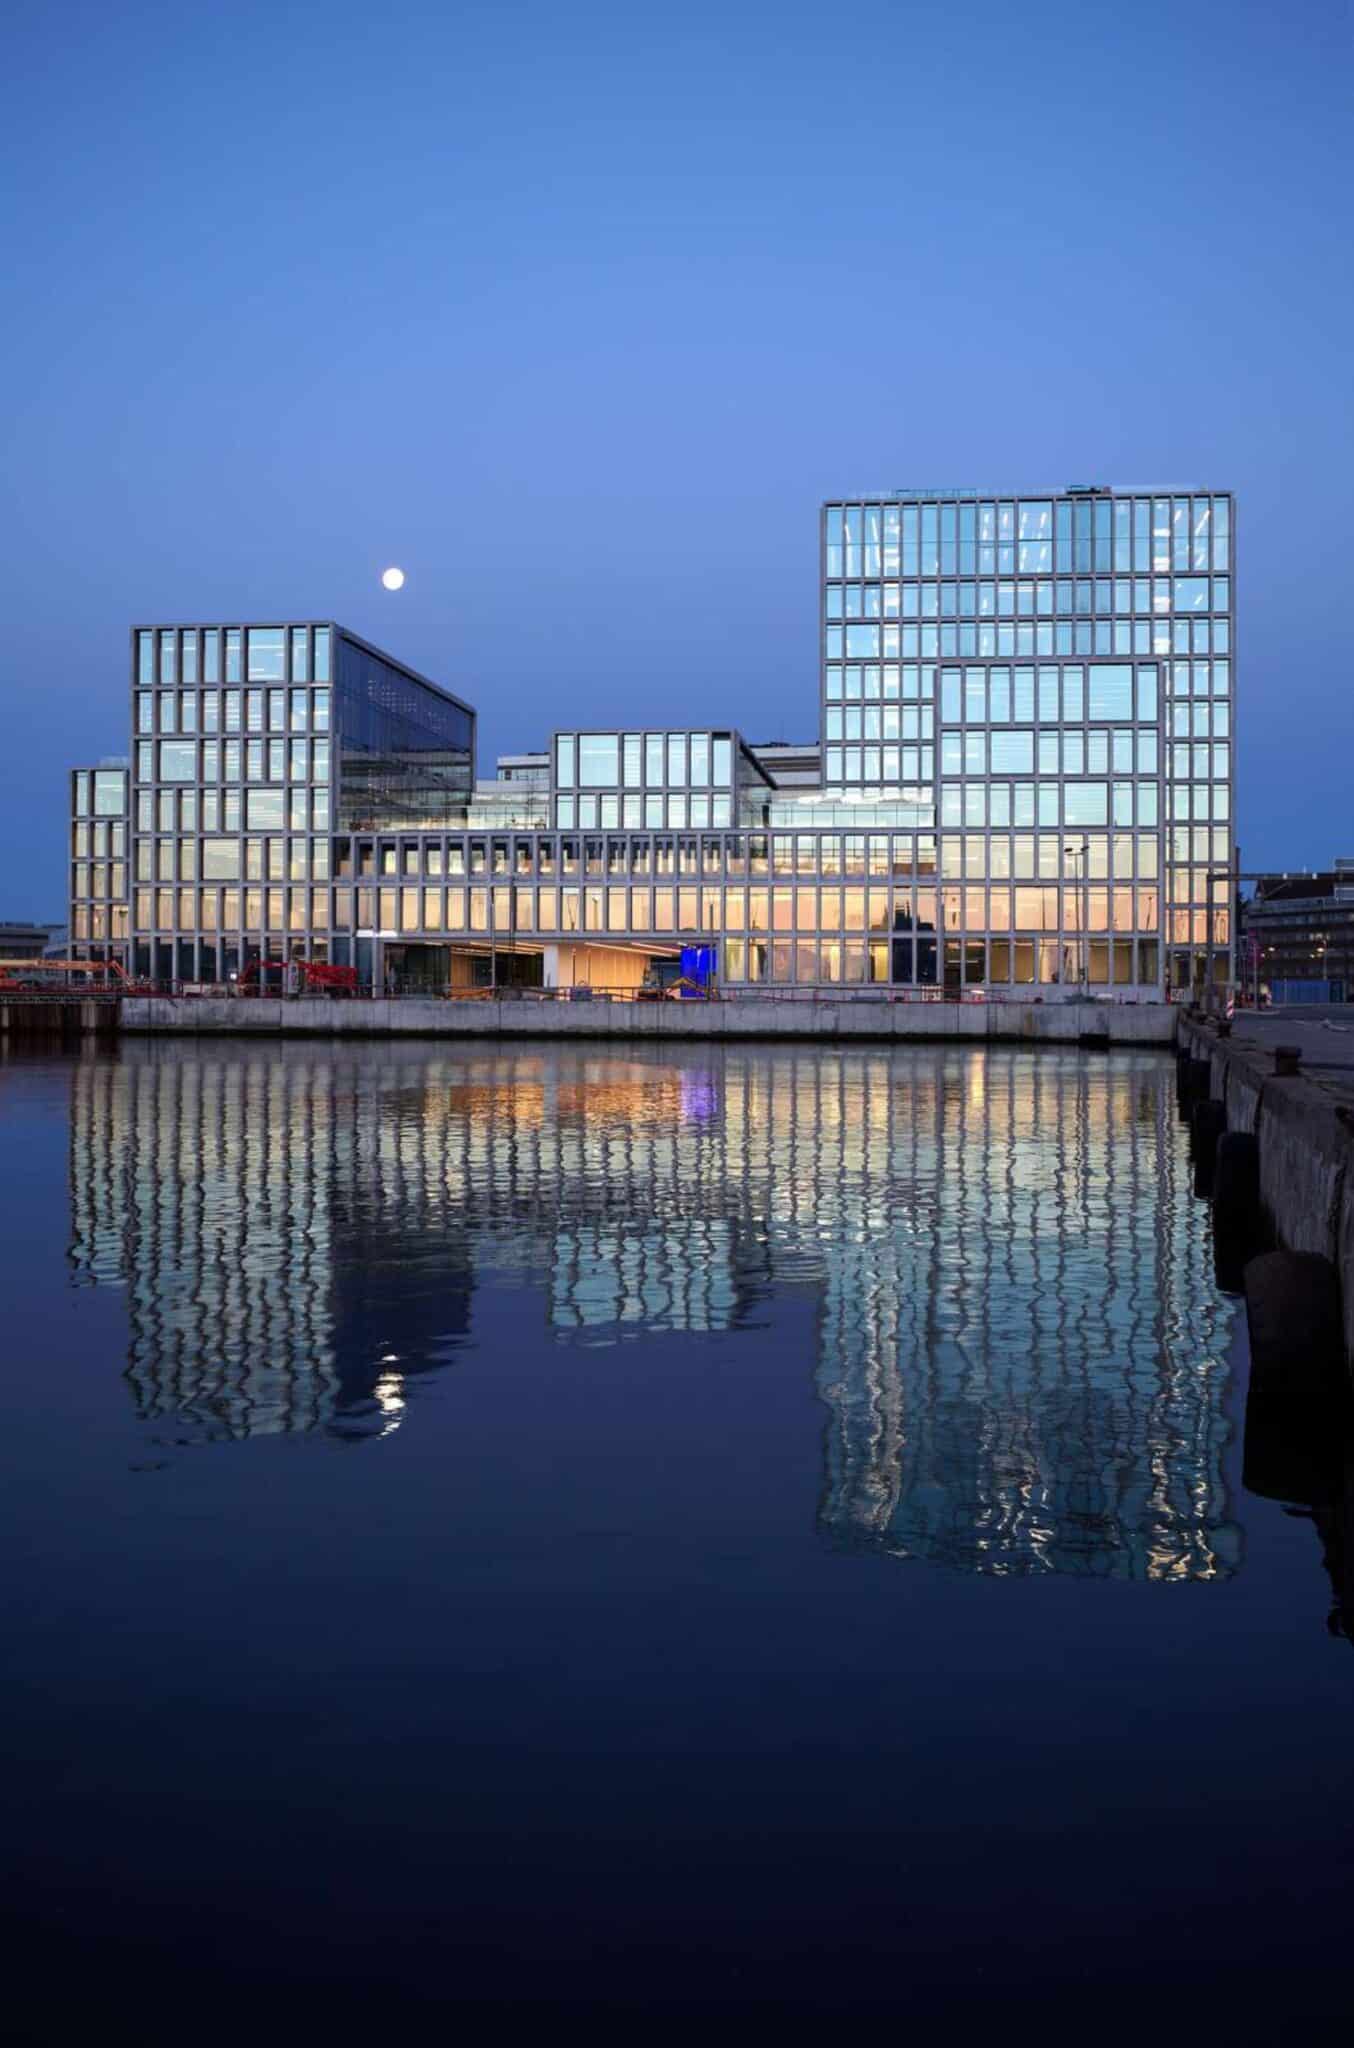 Bestseller_Aarhus_BSAFOT22_CF_Moller_Architects_photo Thomas_Moelvig-1600px (1)